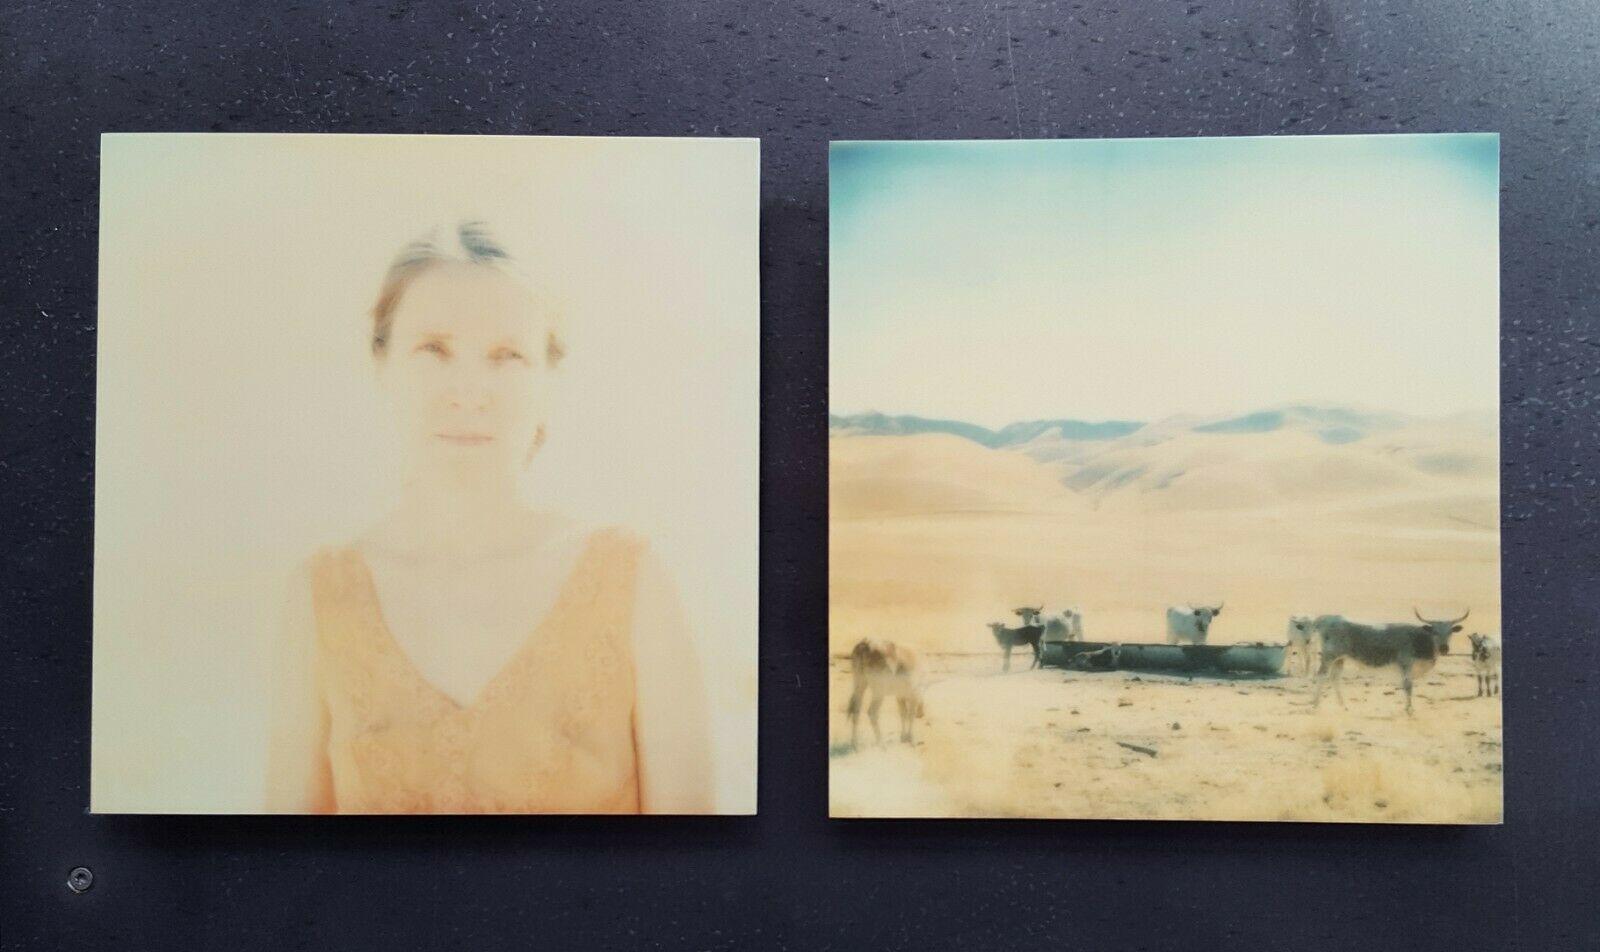 Oilfields, diptych - 21 Century, Polaroid, Contemporary, Portrait, Landscape - Orange Landscape Photograph by Stefanie Schneider